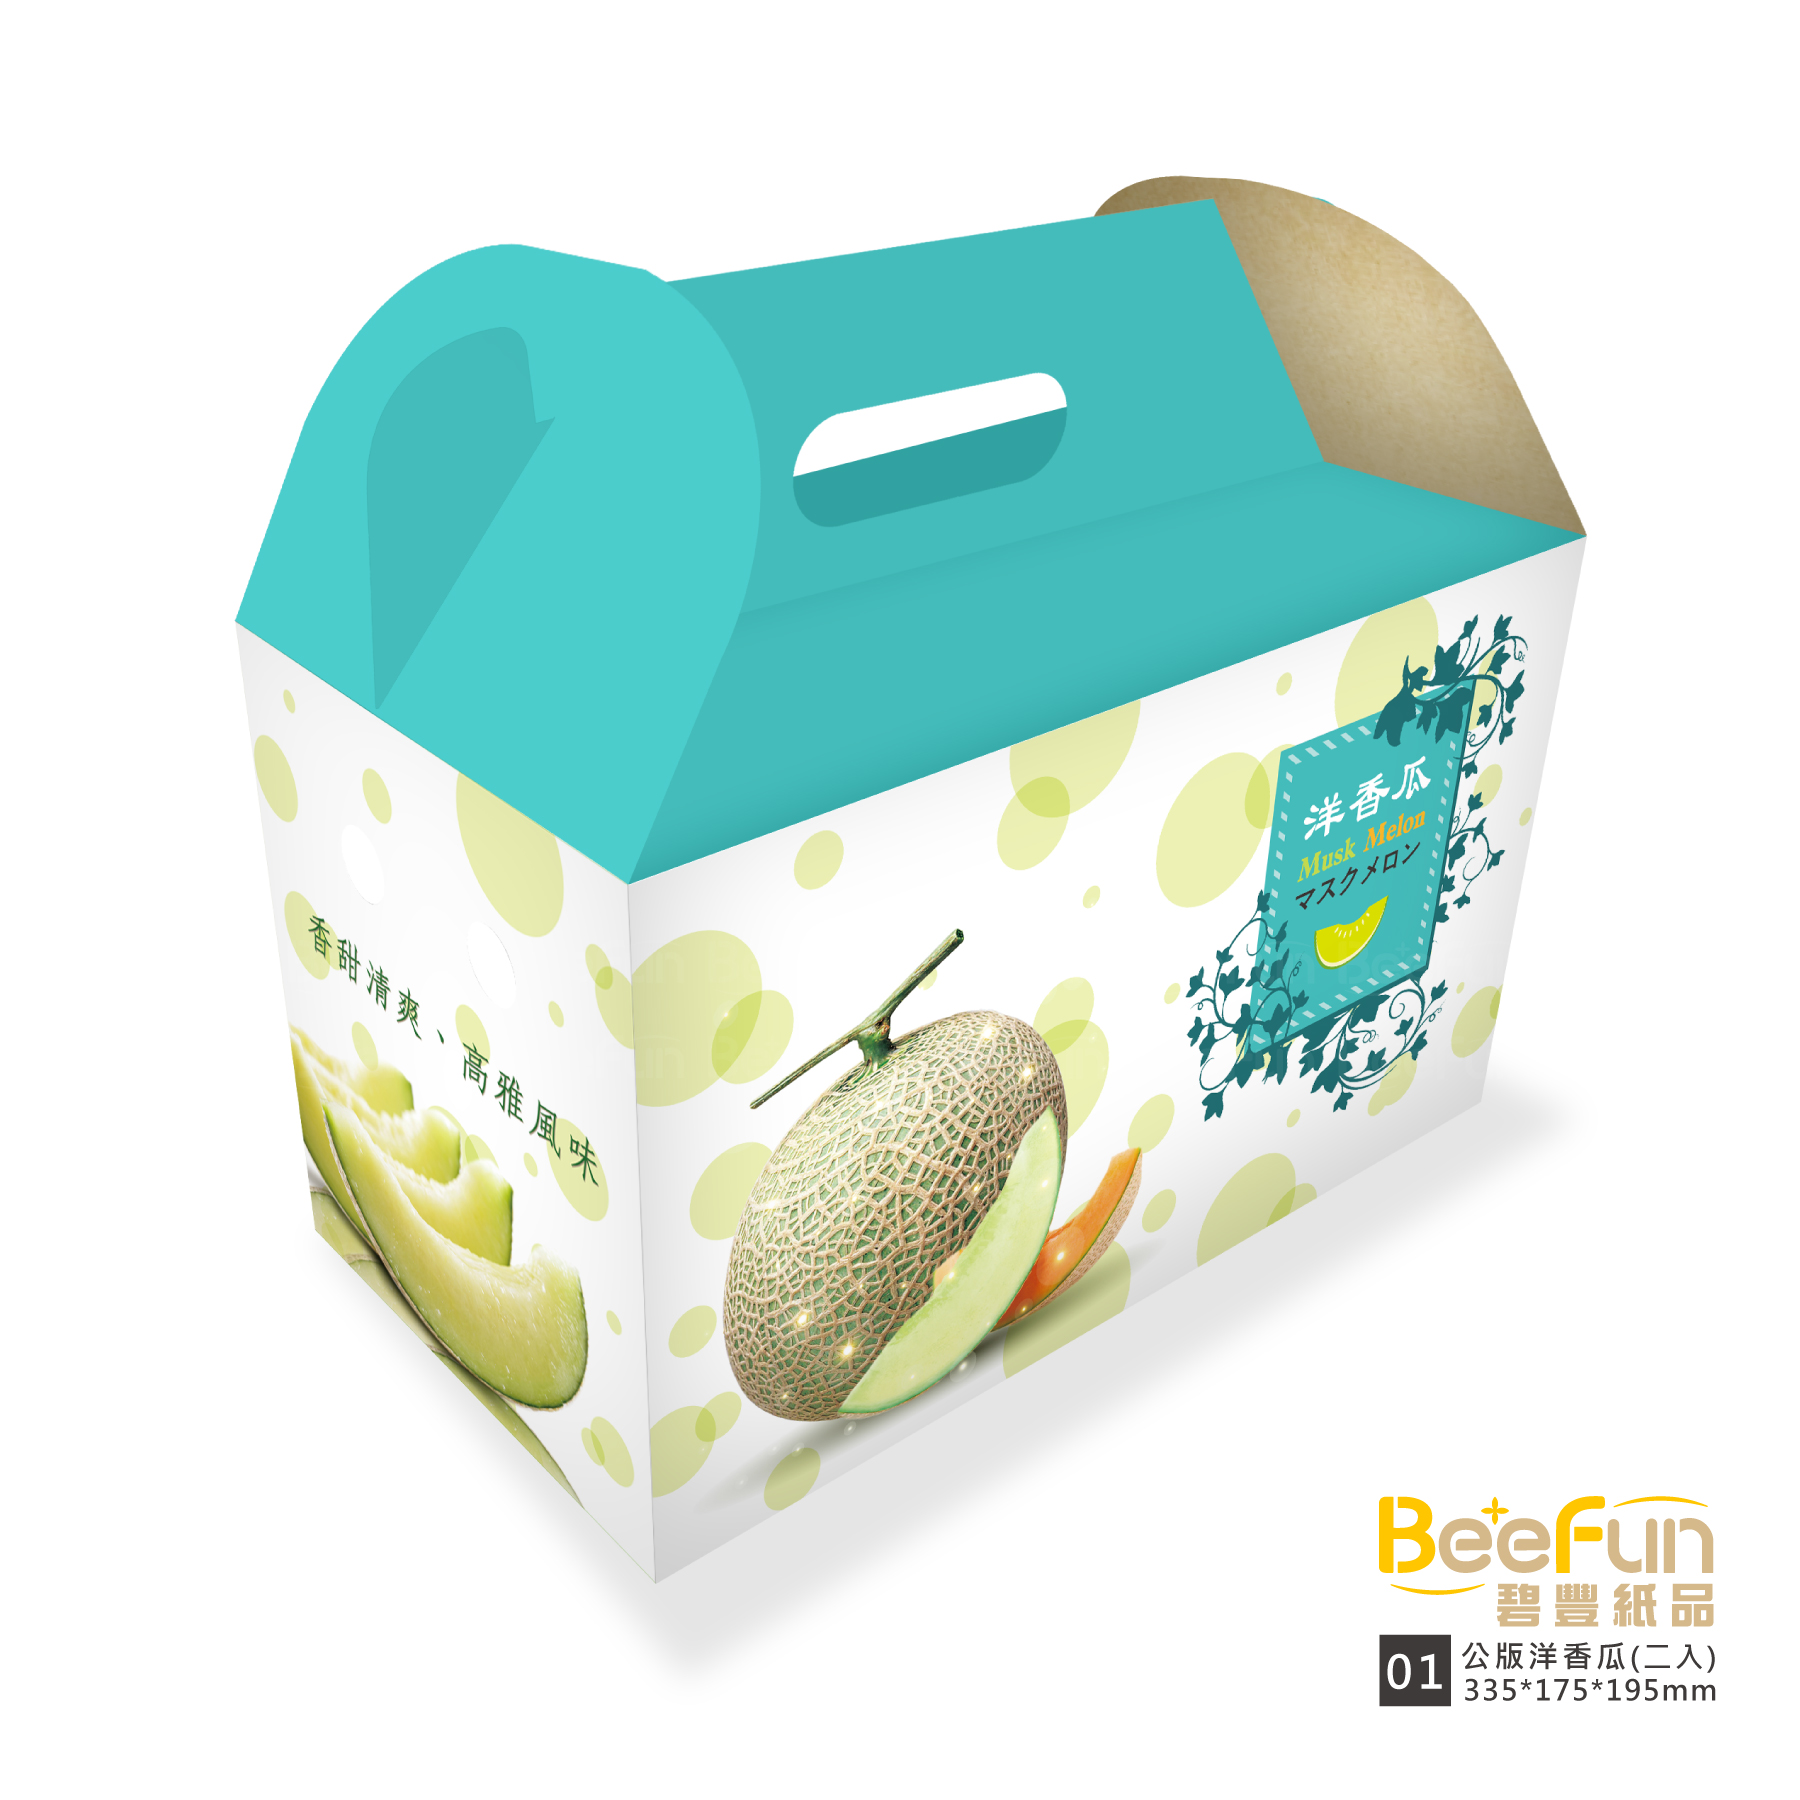 公版洋香瓜(二入)-01款,公版紙盒,水果提盒,哈密瓜